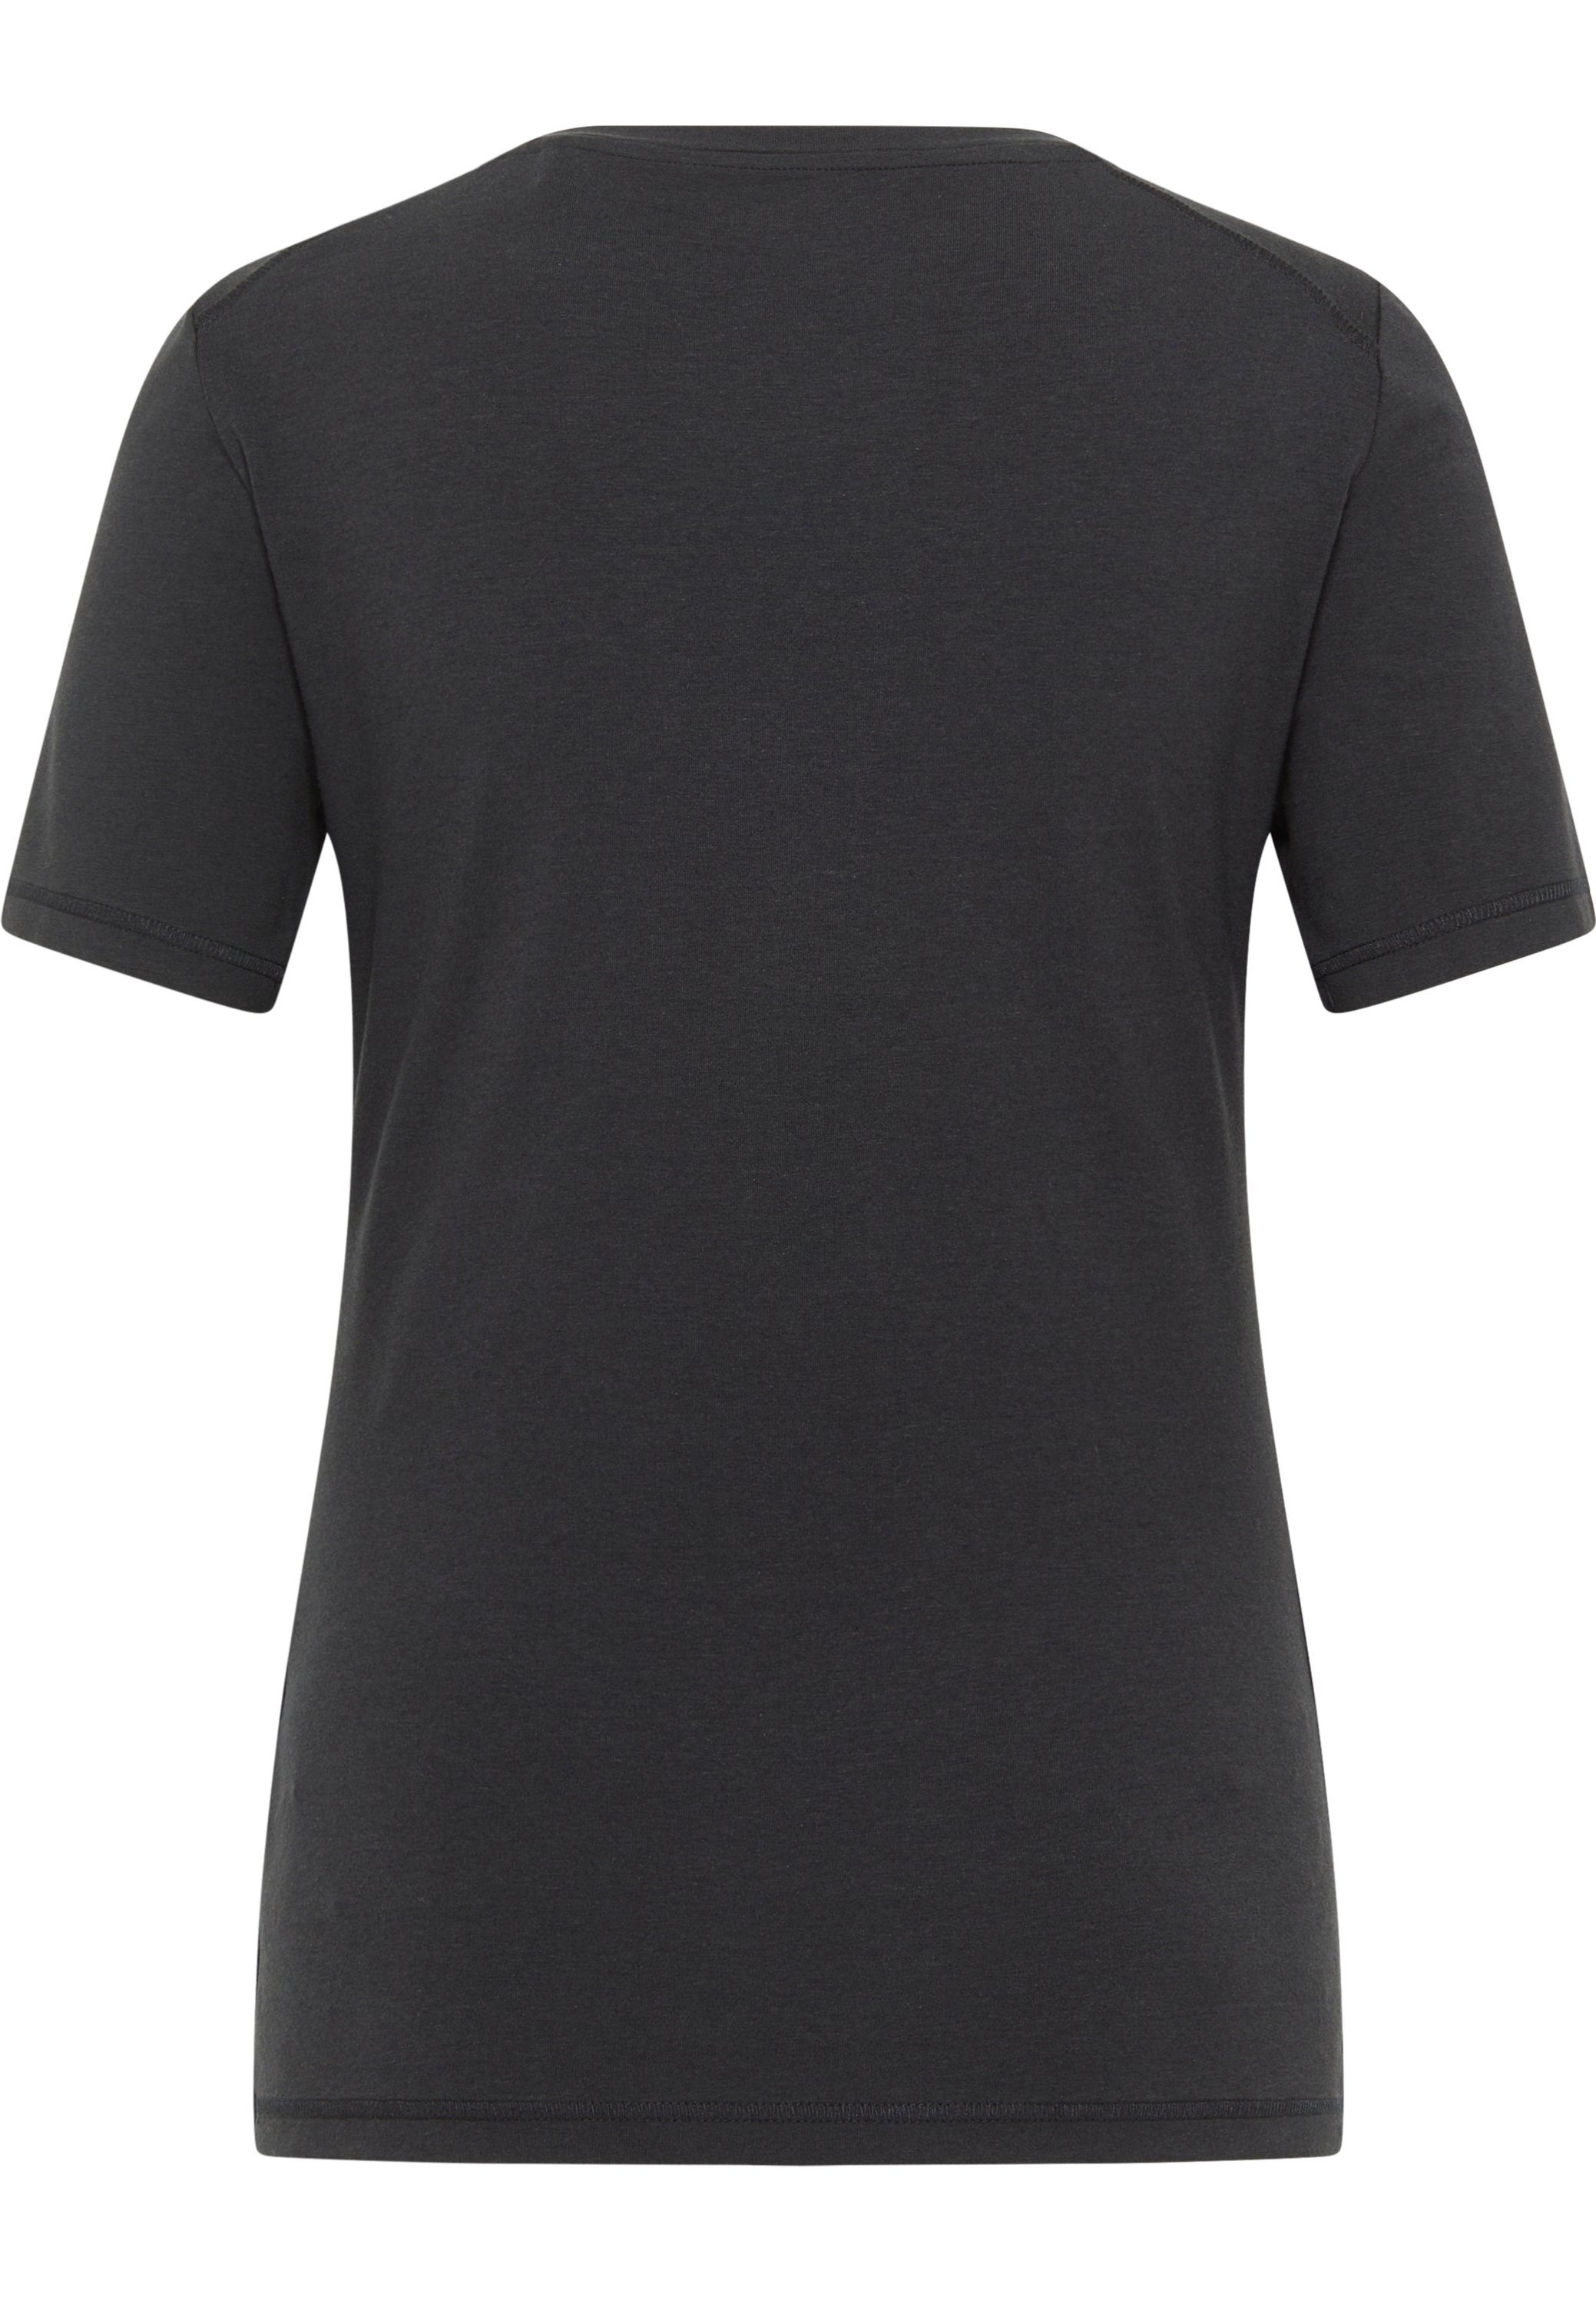 MUSTANG Kurzarmshirt T-Shirt, Baumwoll-Modalmischung mit Elasthan